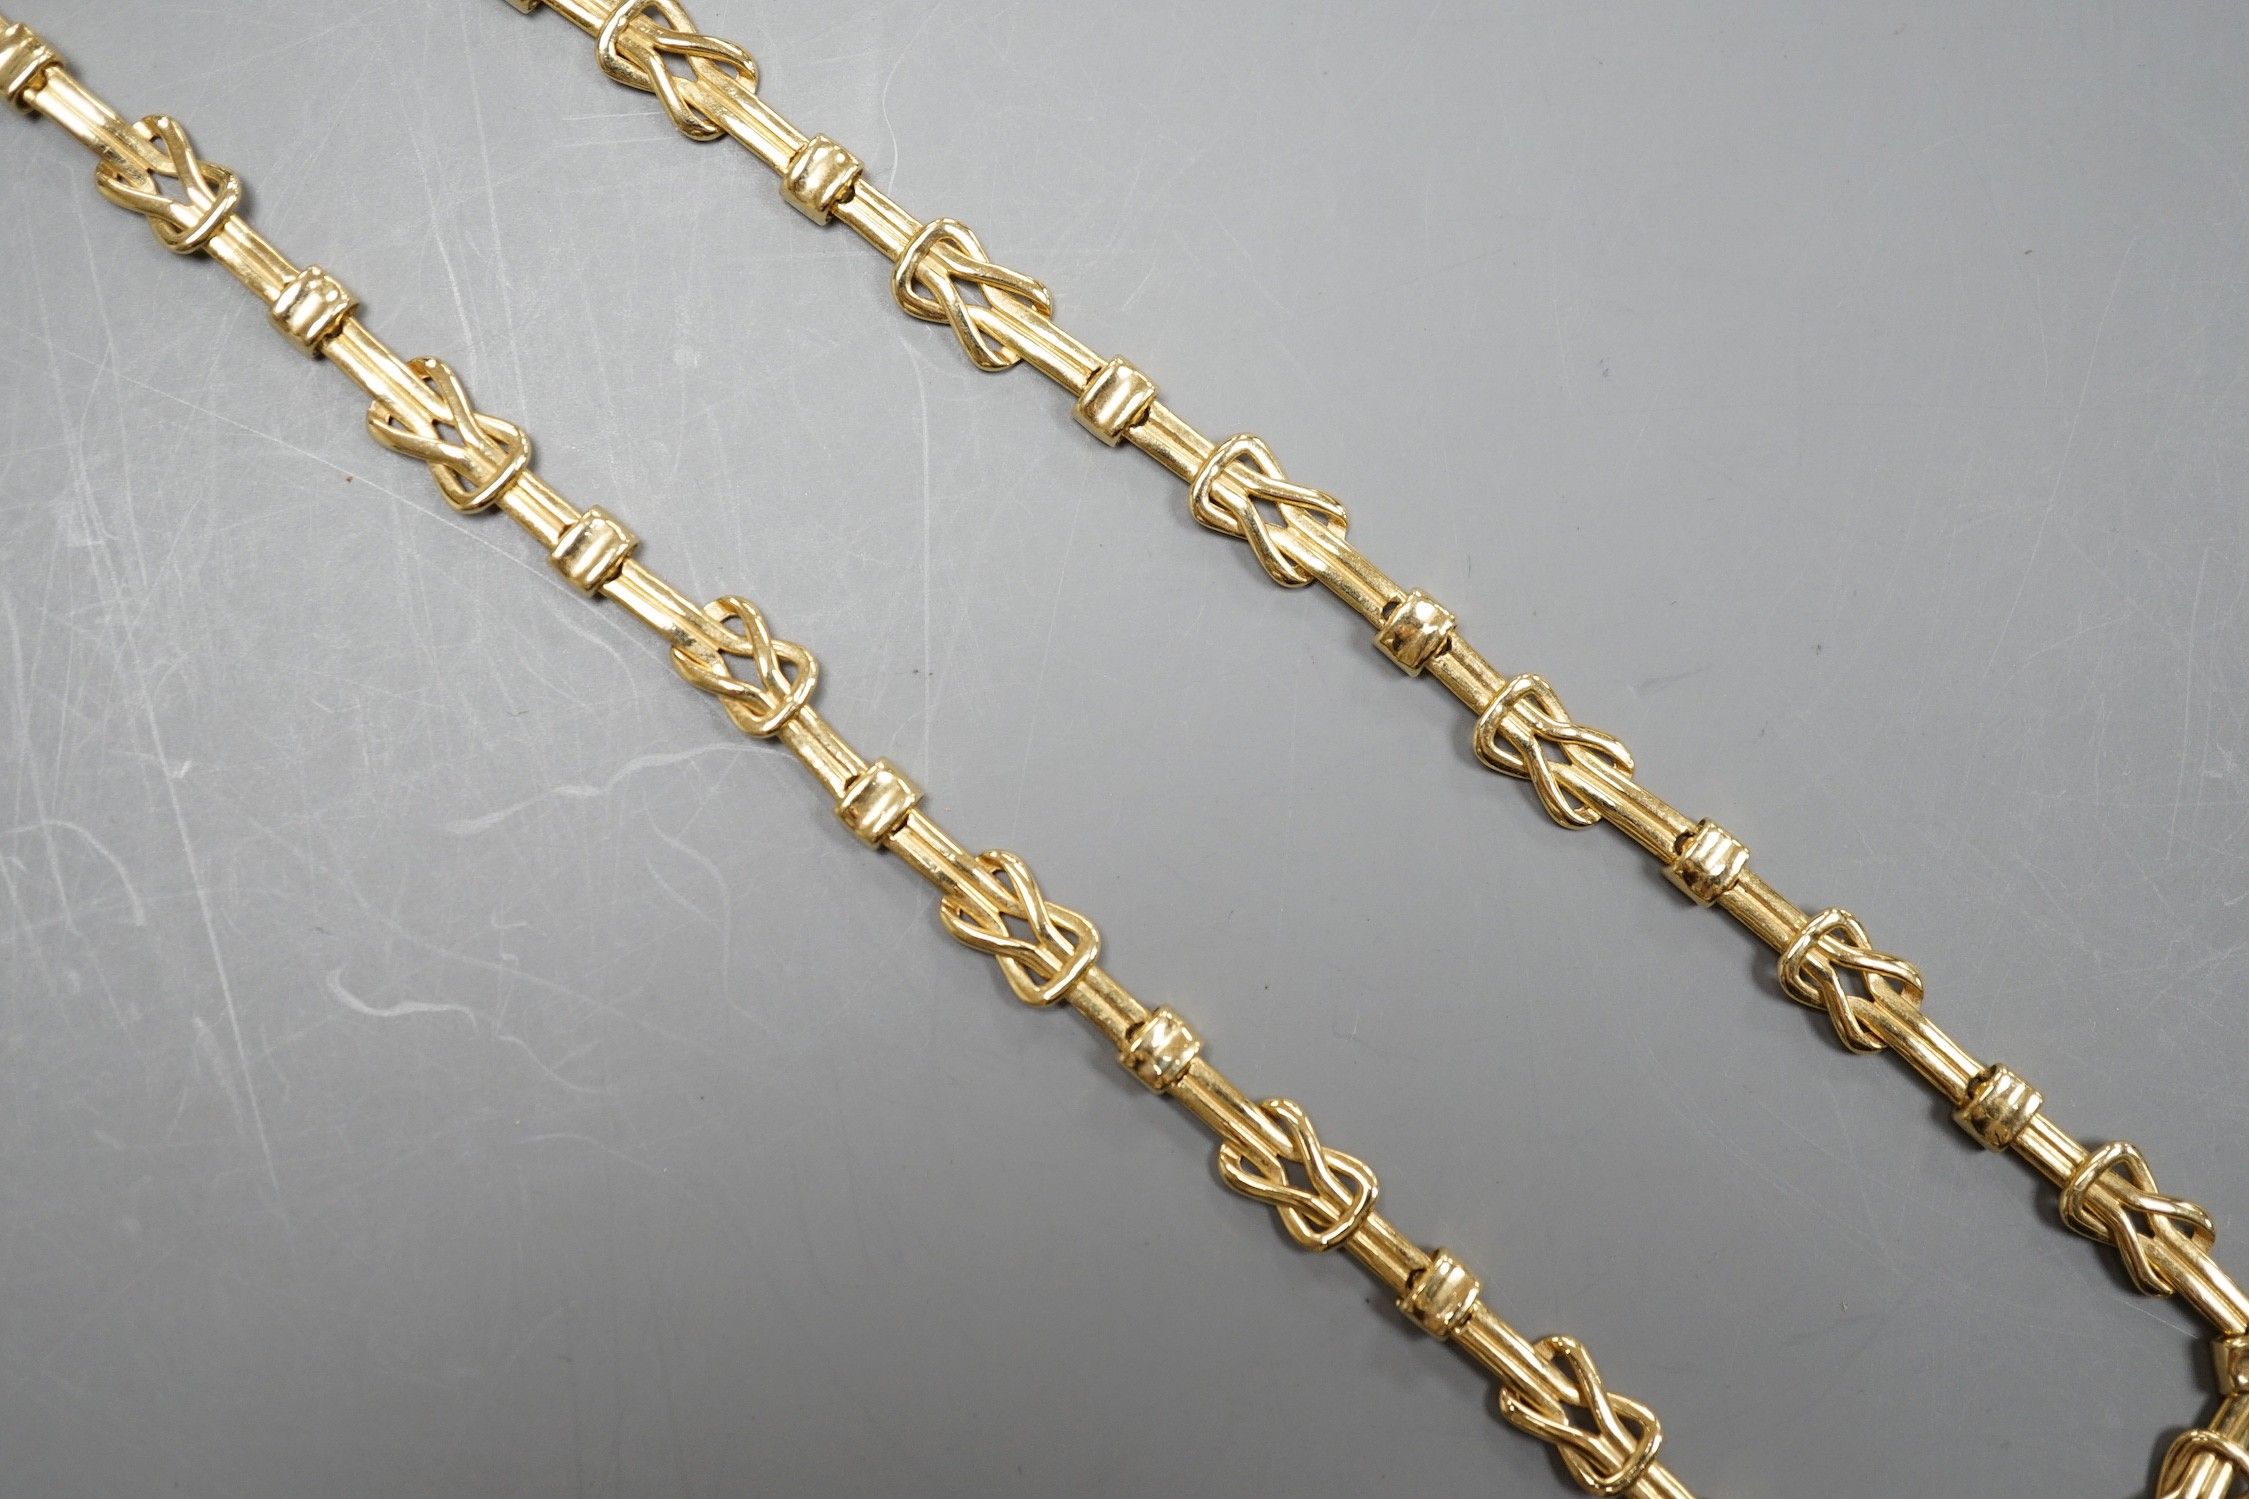 A modern Italian 18k fancy link chain, 43cm, 22.3 grams.